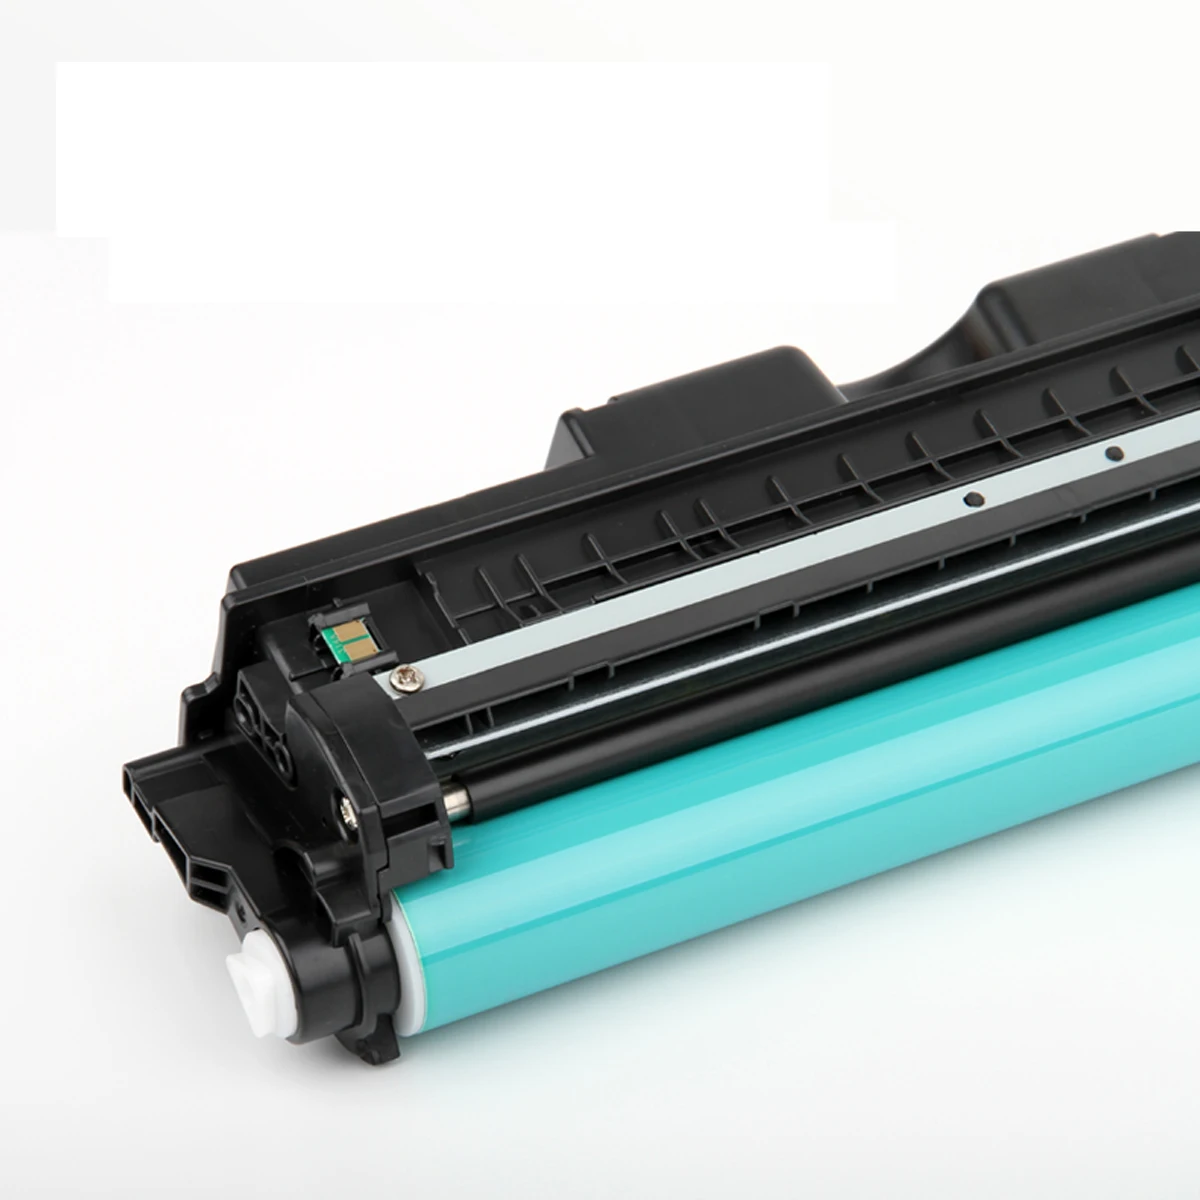 

Картридж CE314A для принтера HP Color LaserJet Pro CP1025 CP1025nw M175a M175nw M275MFP, 1 шт.